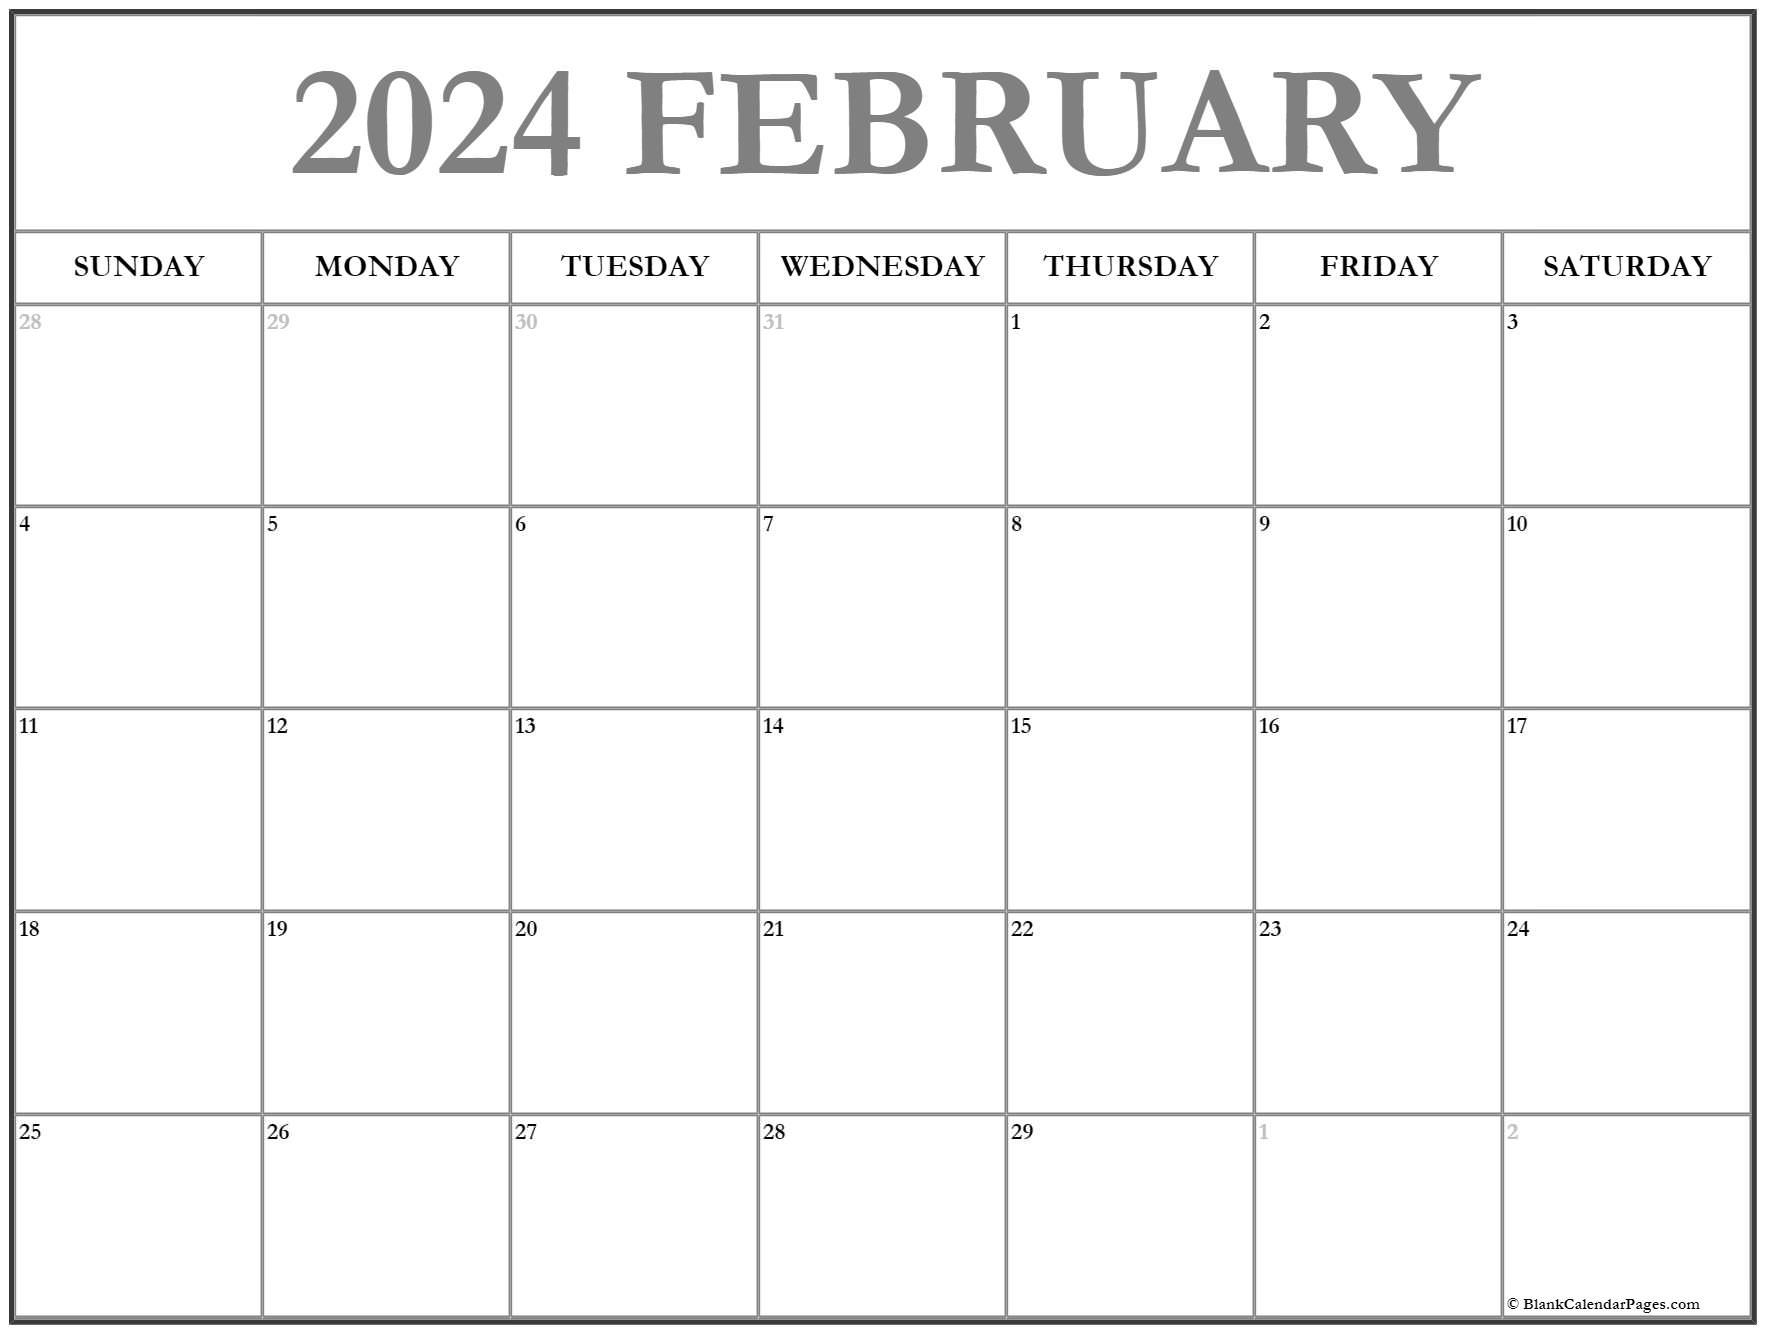 February, 2023